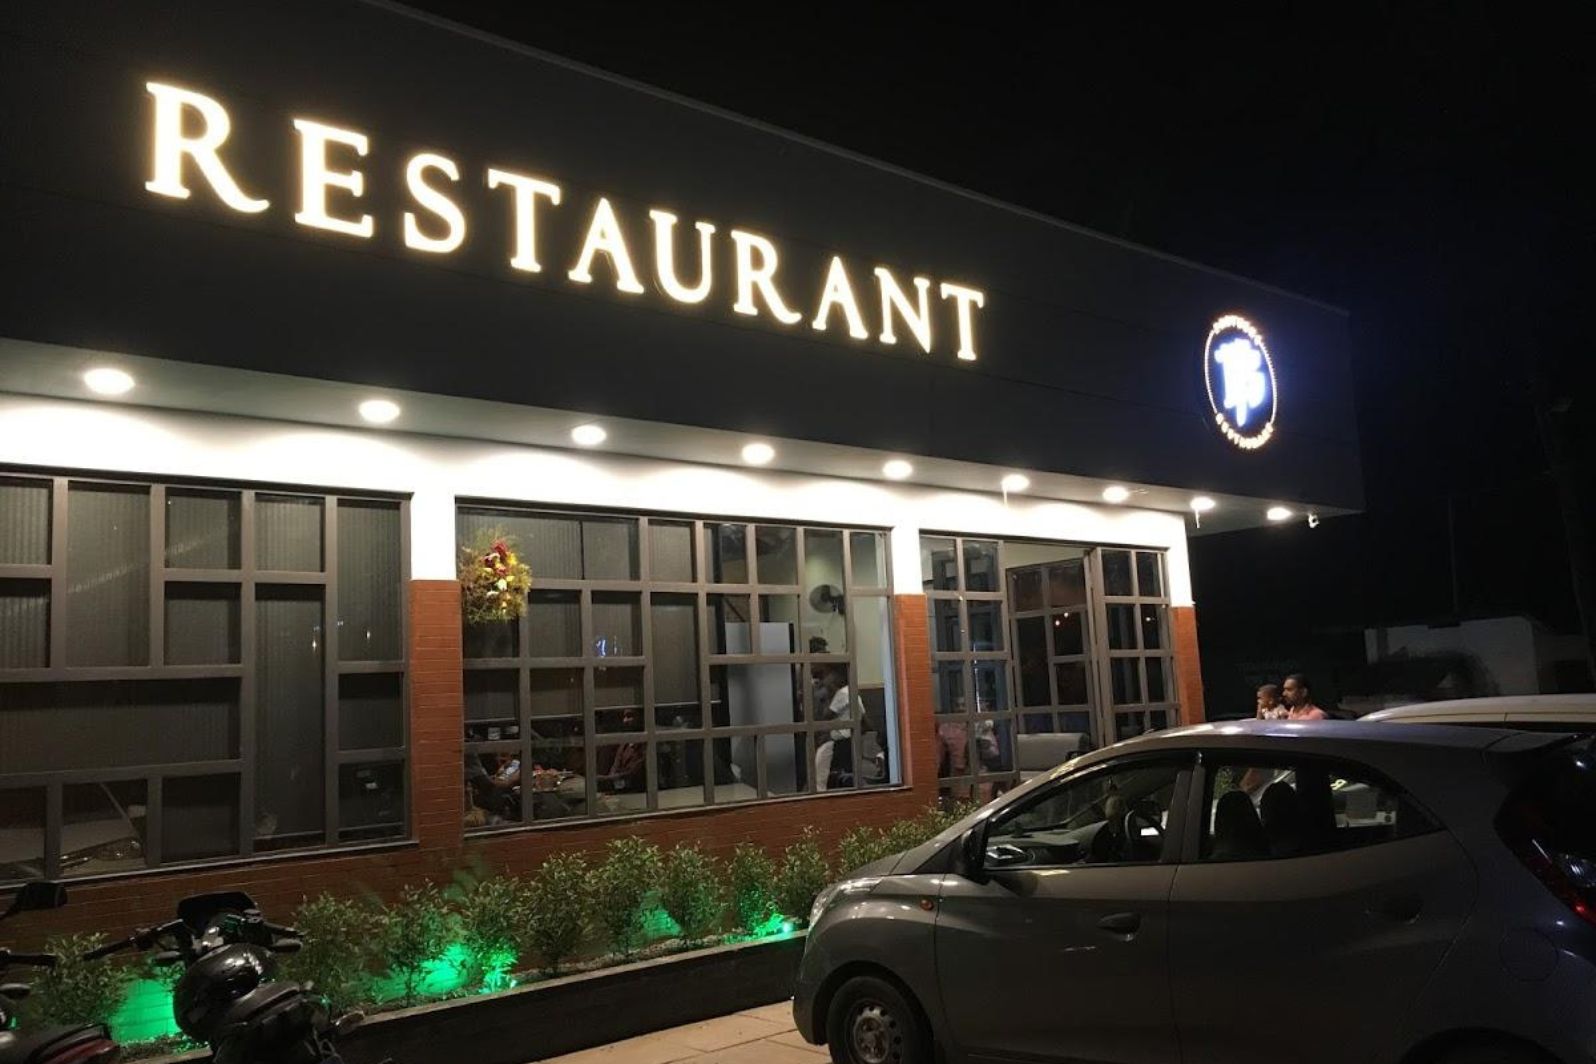 14s restaurant balussery, kozhikode